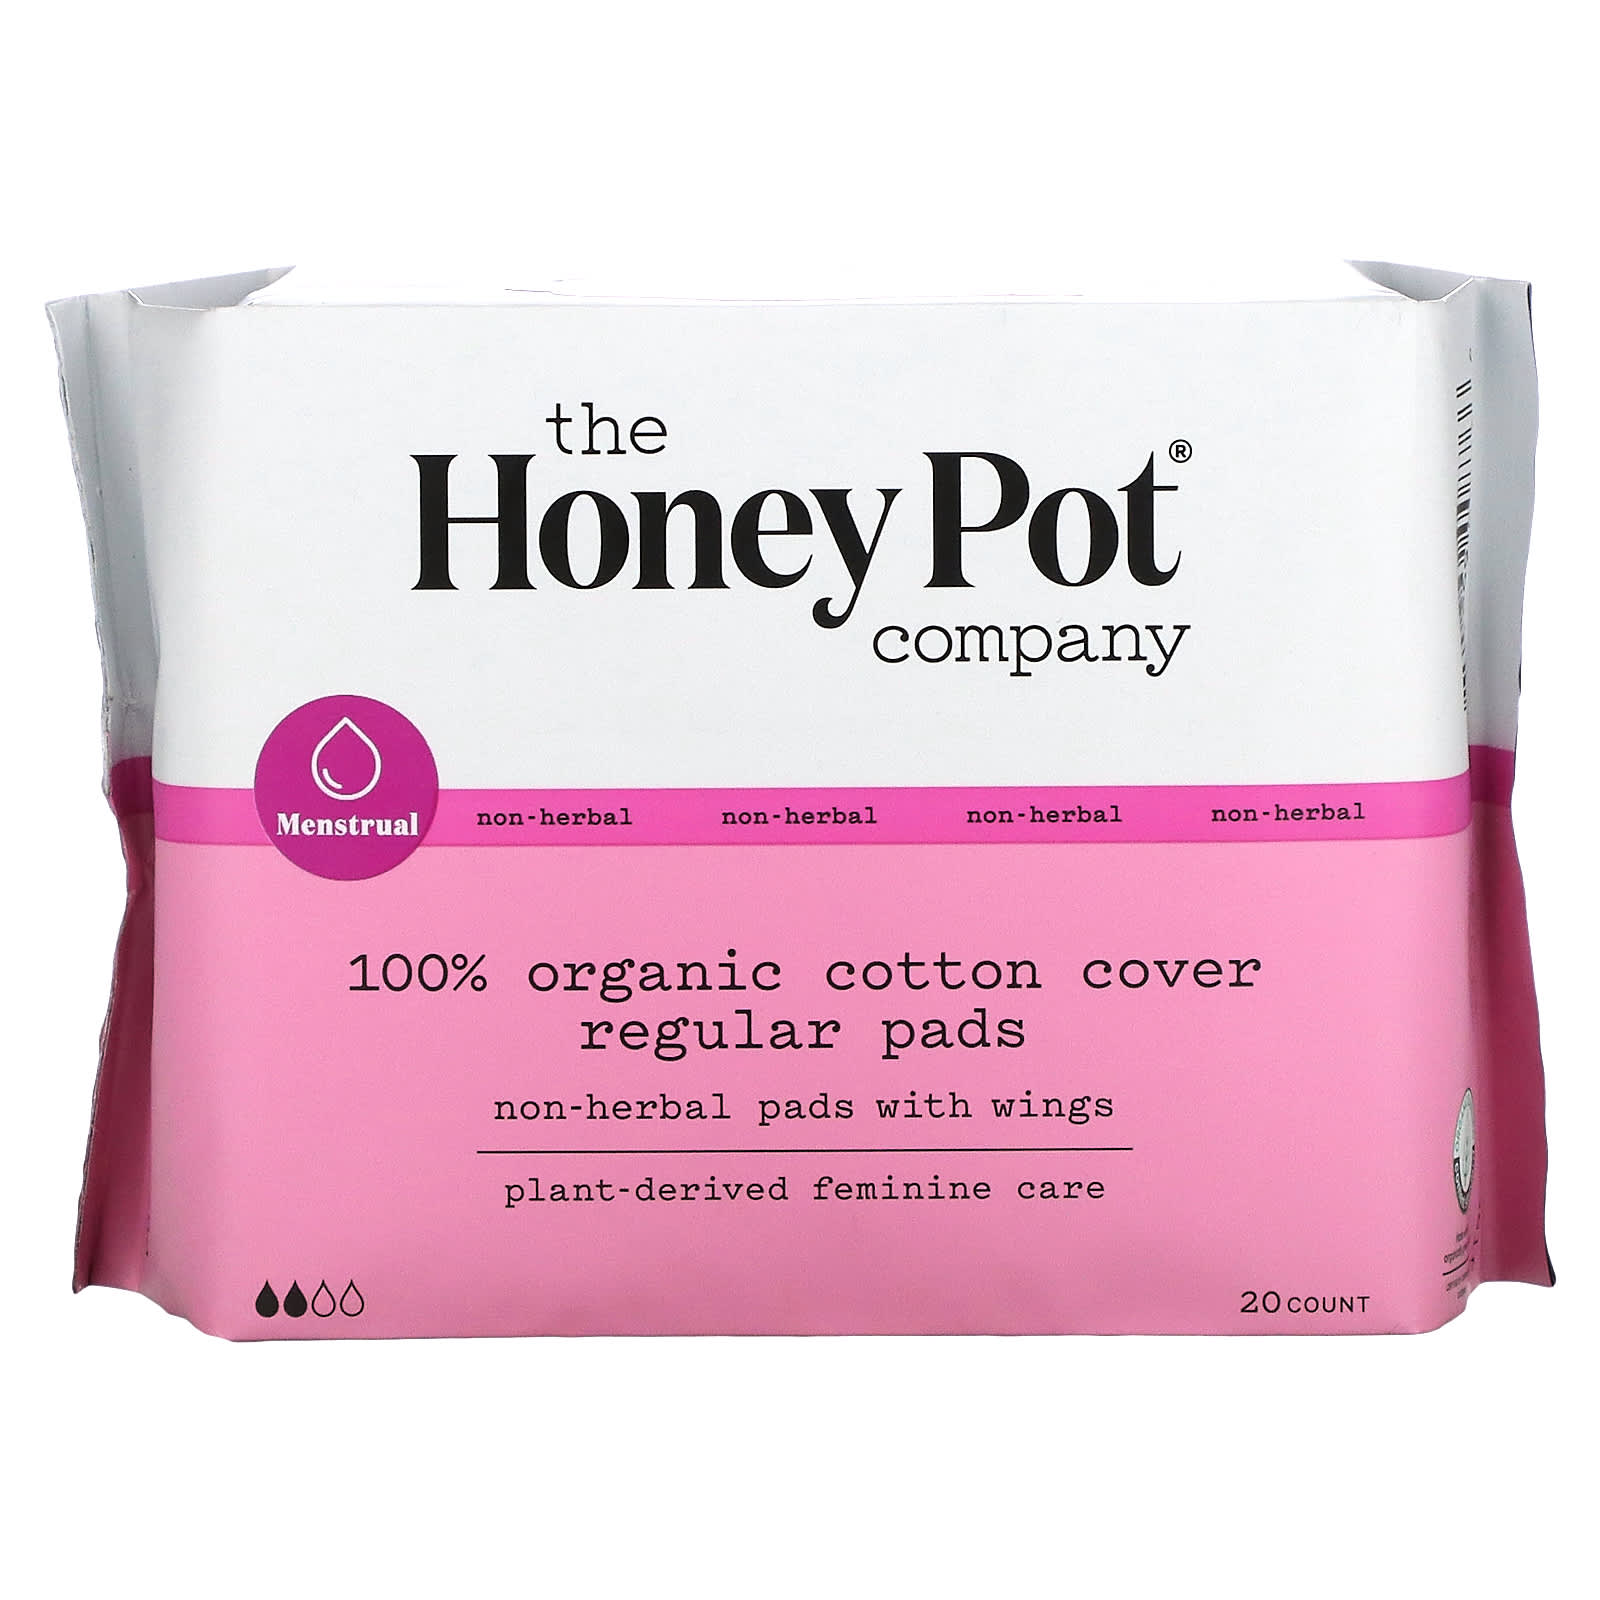 Regular, органические прокладки с крылышками, не на травяной основе, 20 шт. The Honey Pot Company